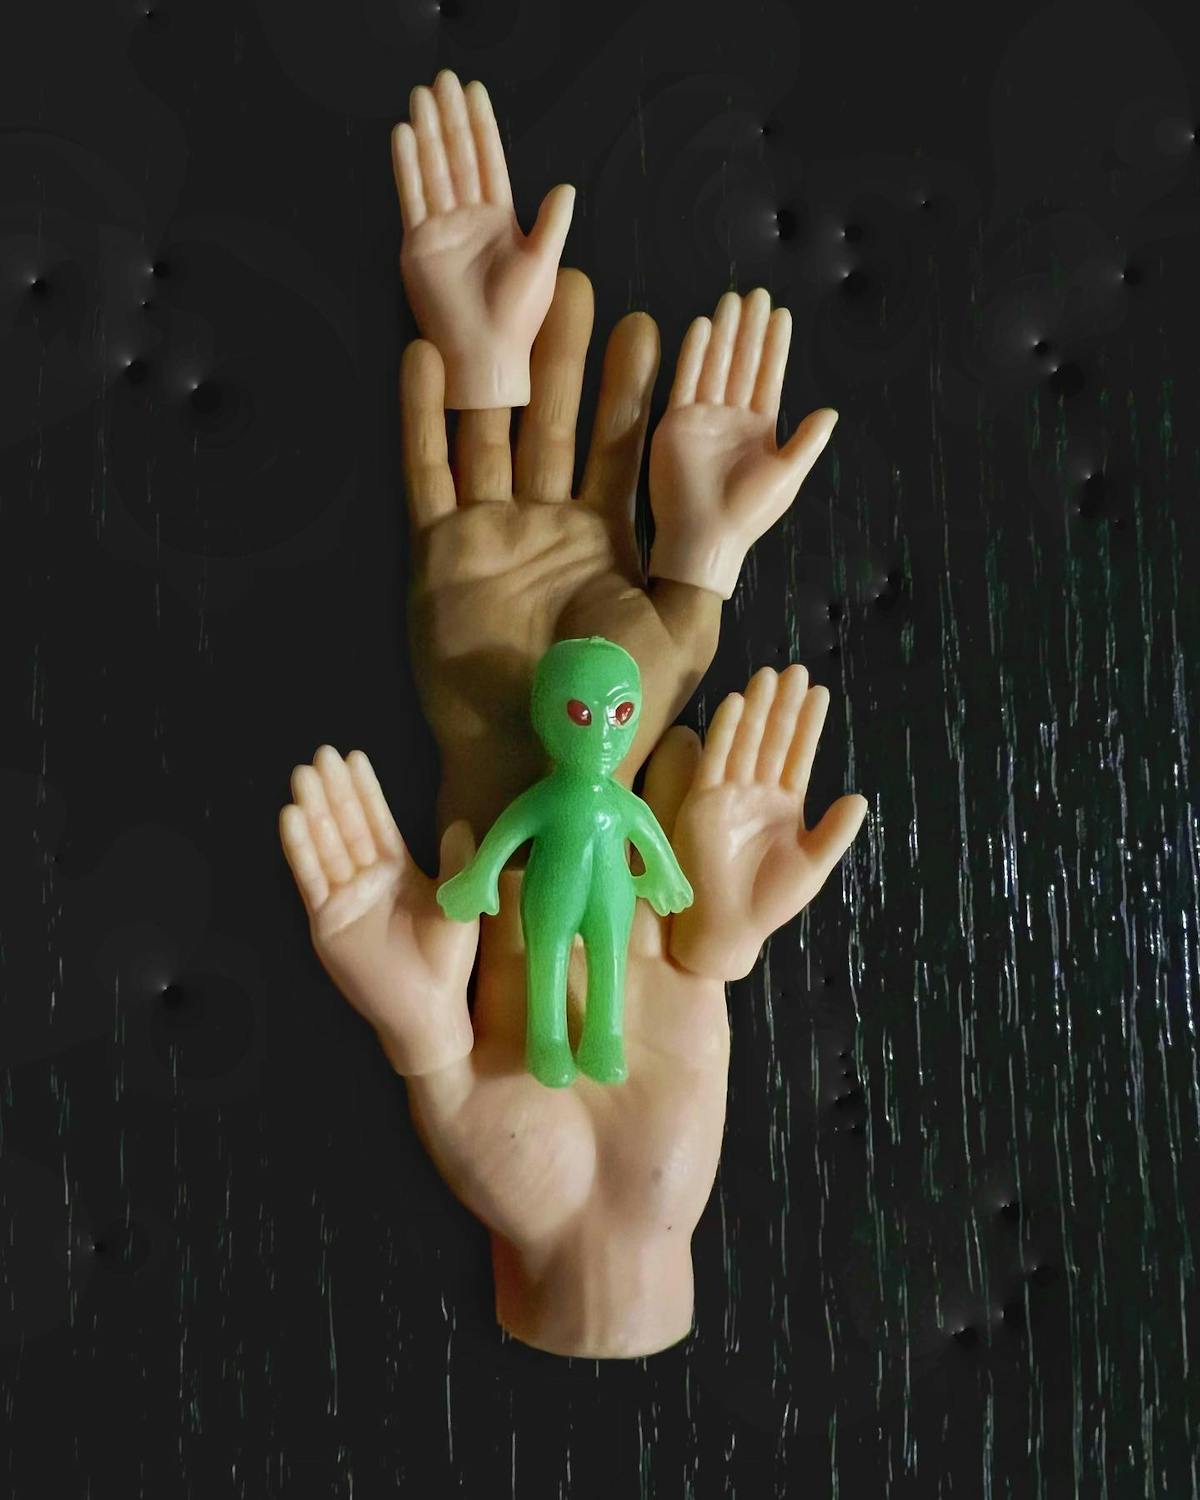 Handsy alien